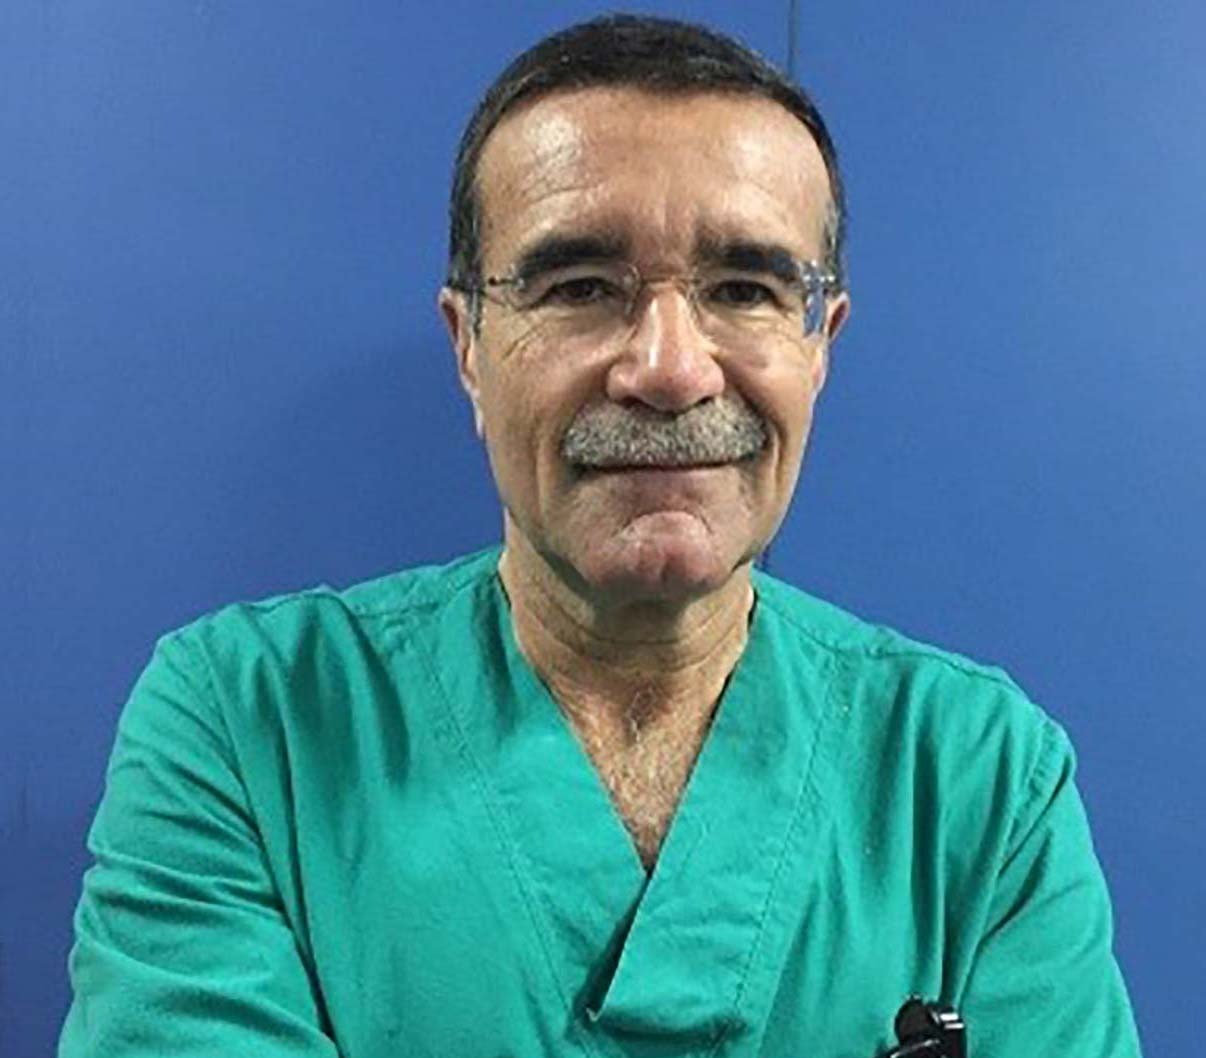 Napoli, al Policlinico serve un pronto soccorso: l’appello di Triassi dalla Surgery Week 2022